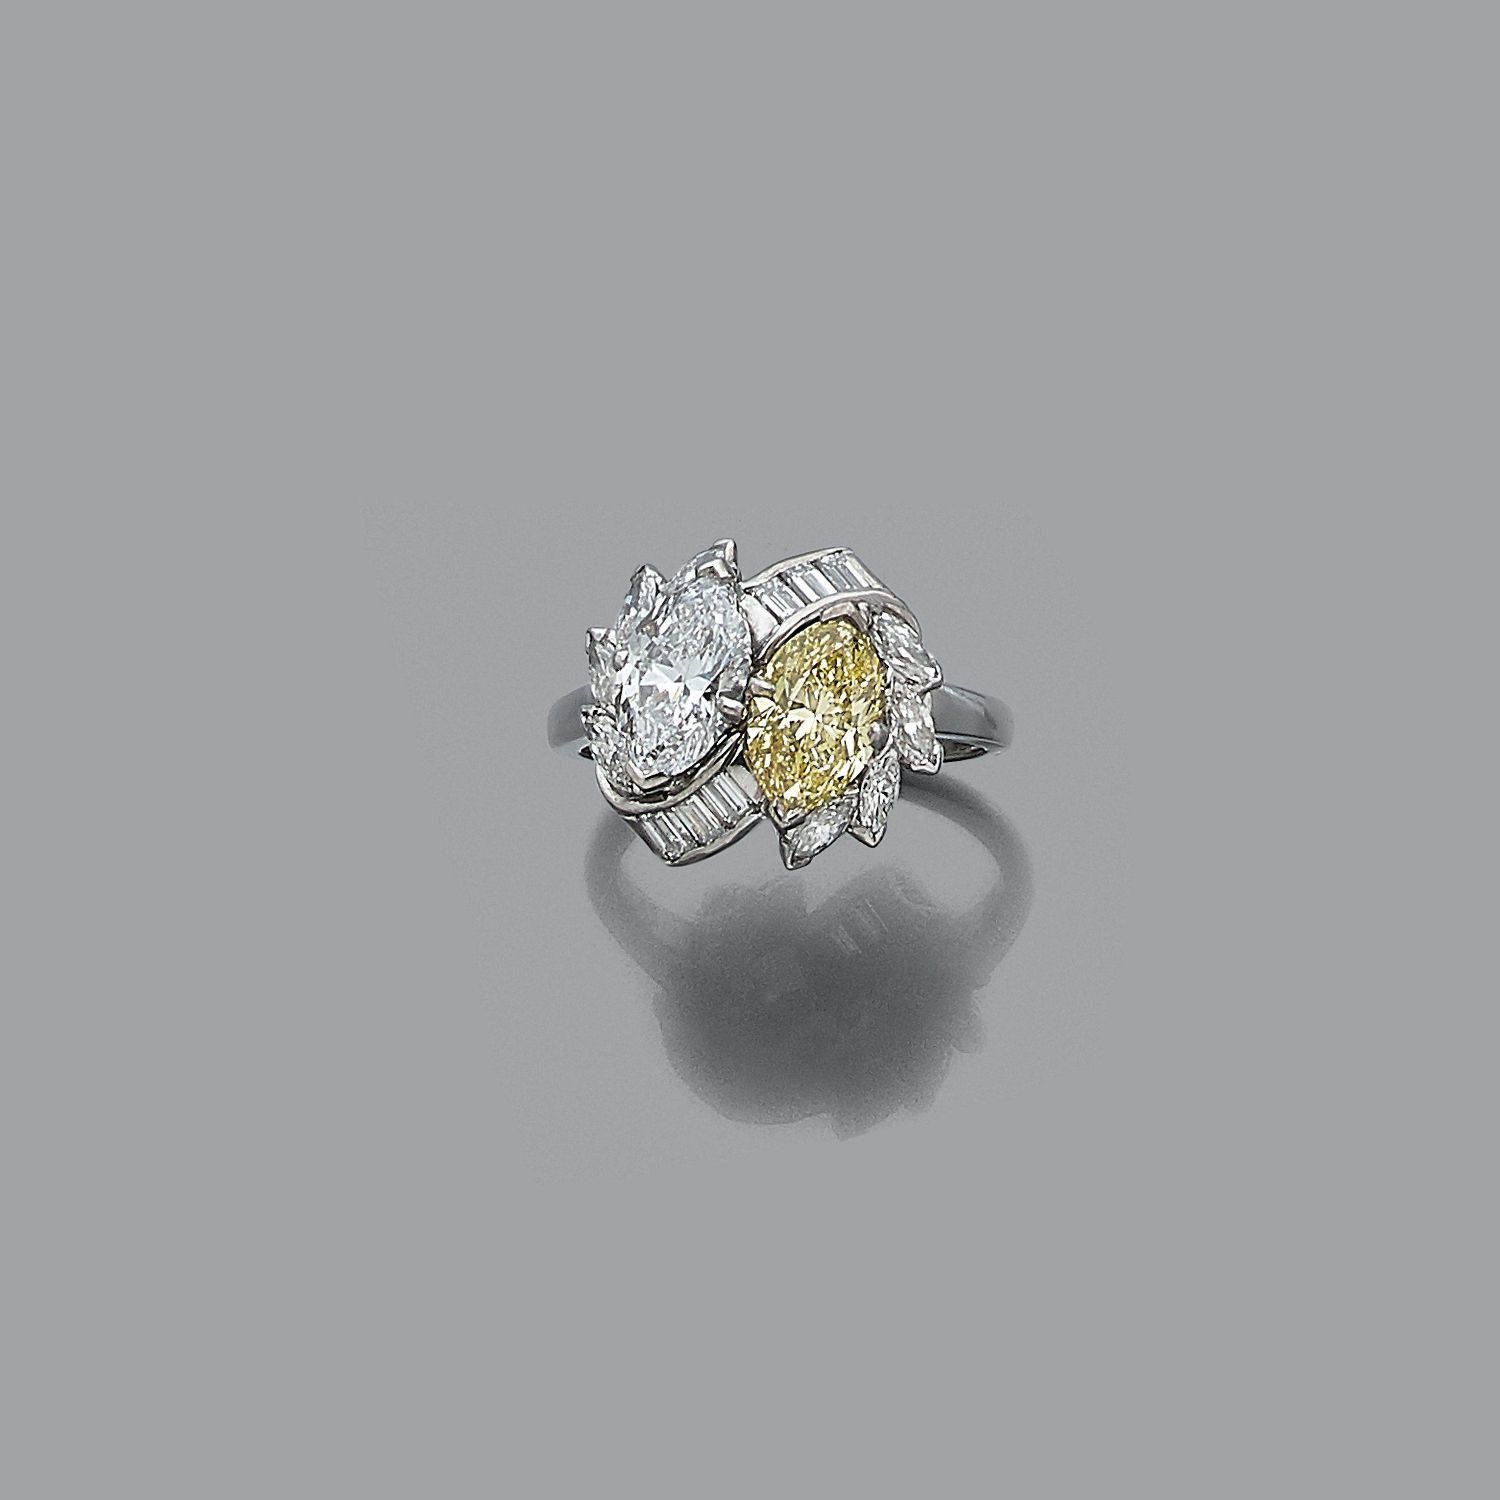 Null 铂金戒指 "你和我"，镶嵌两颗脐带钻石，一颗白钻1.06克拉（D-VVS2-无荧光），一颗炫彩黄钻1.14克拉（VVS1），镶嵌在长方形和脐带钻石上。&hellip;